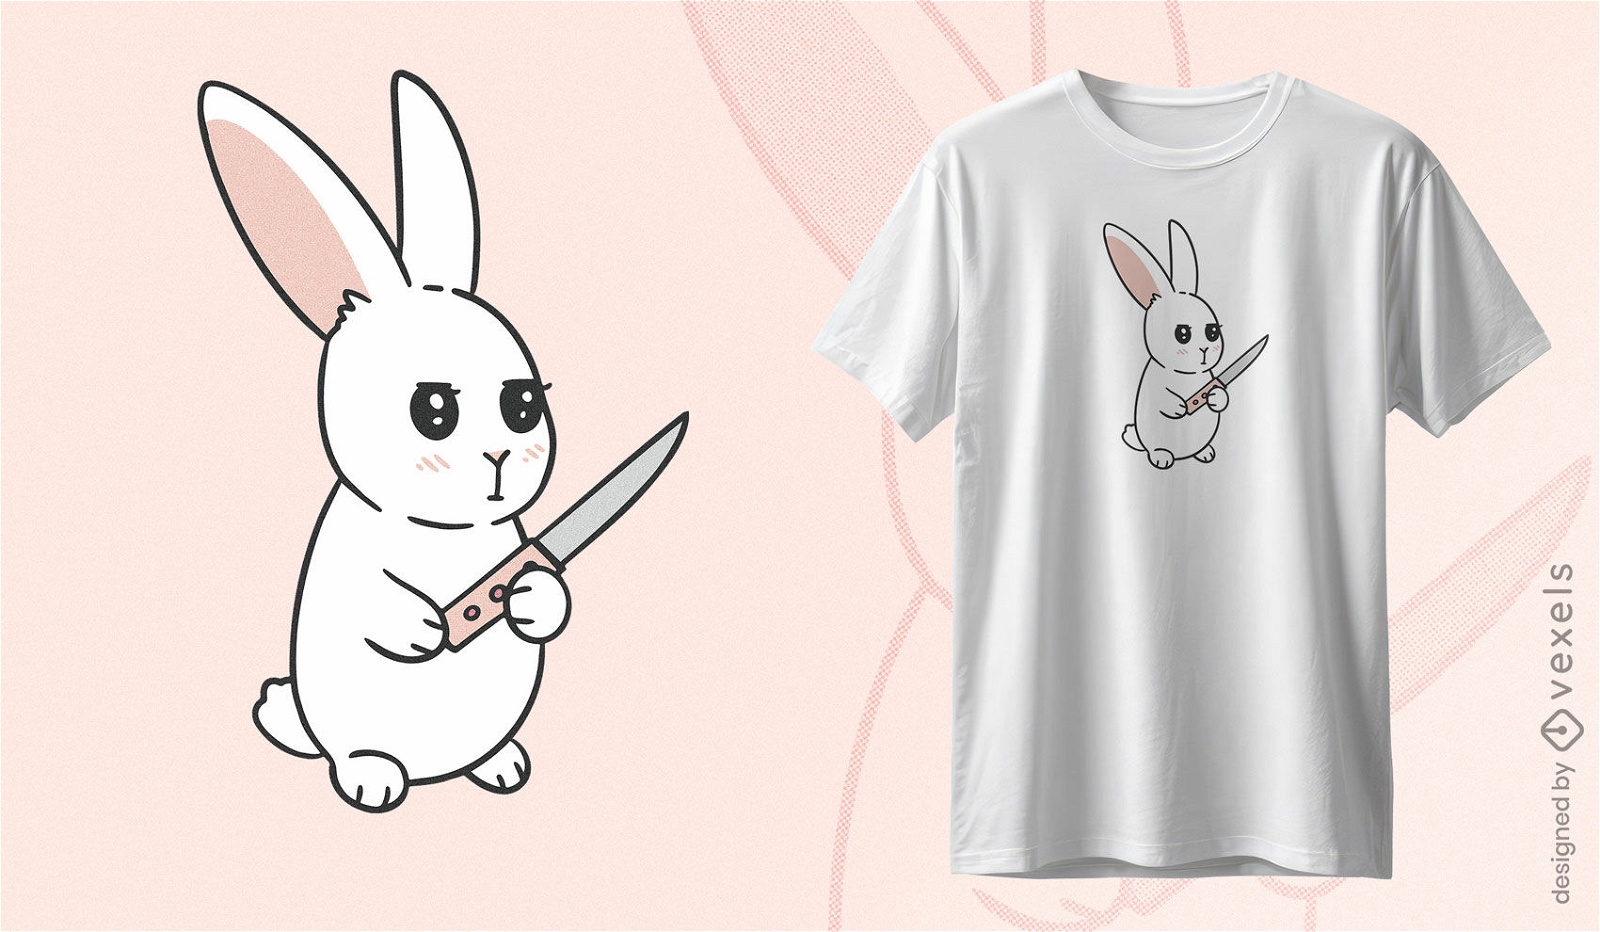 Diseño de camiseta de conejito amenazante.